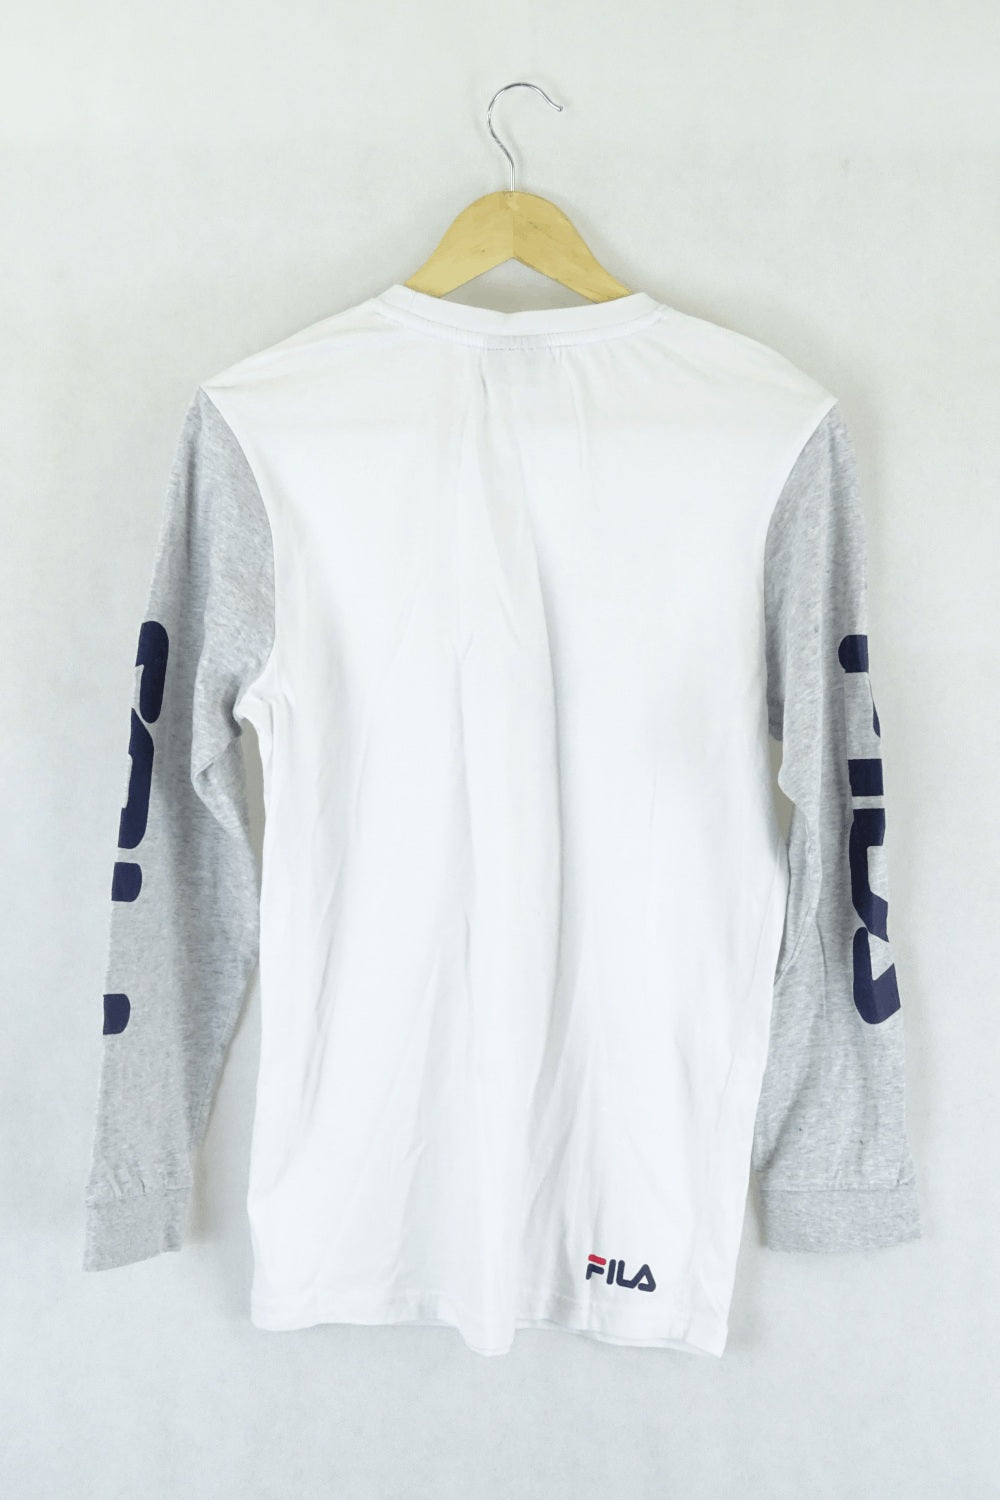 Fila White T-Shirt S